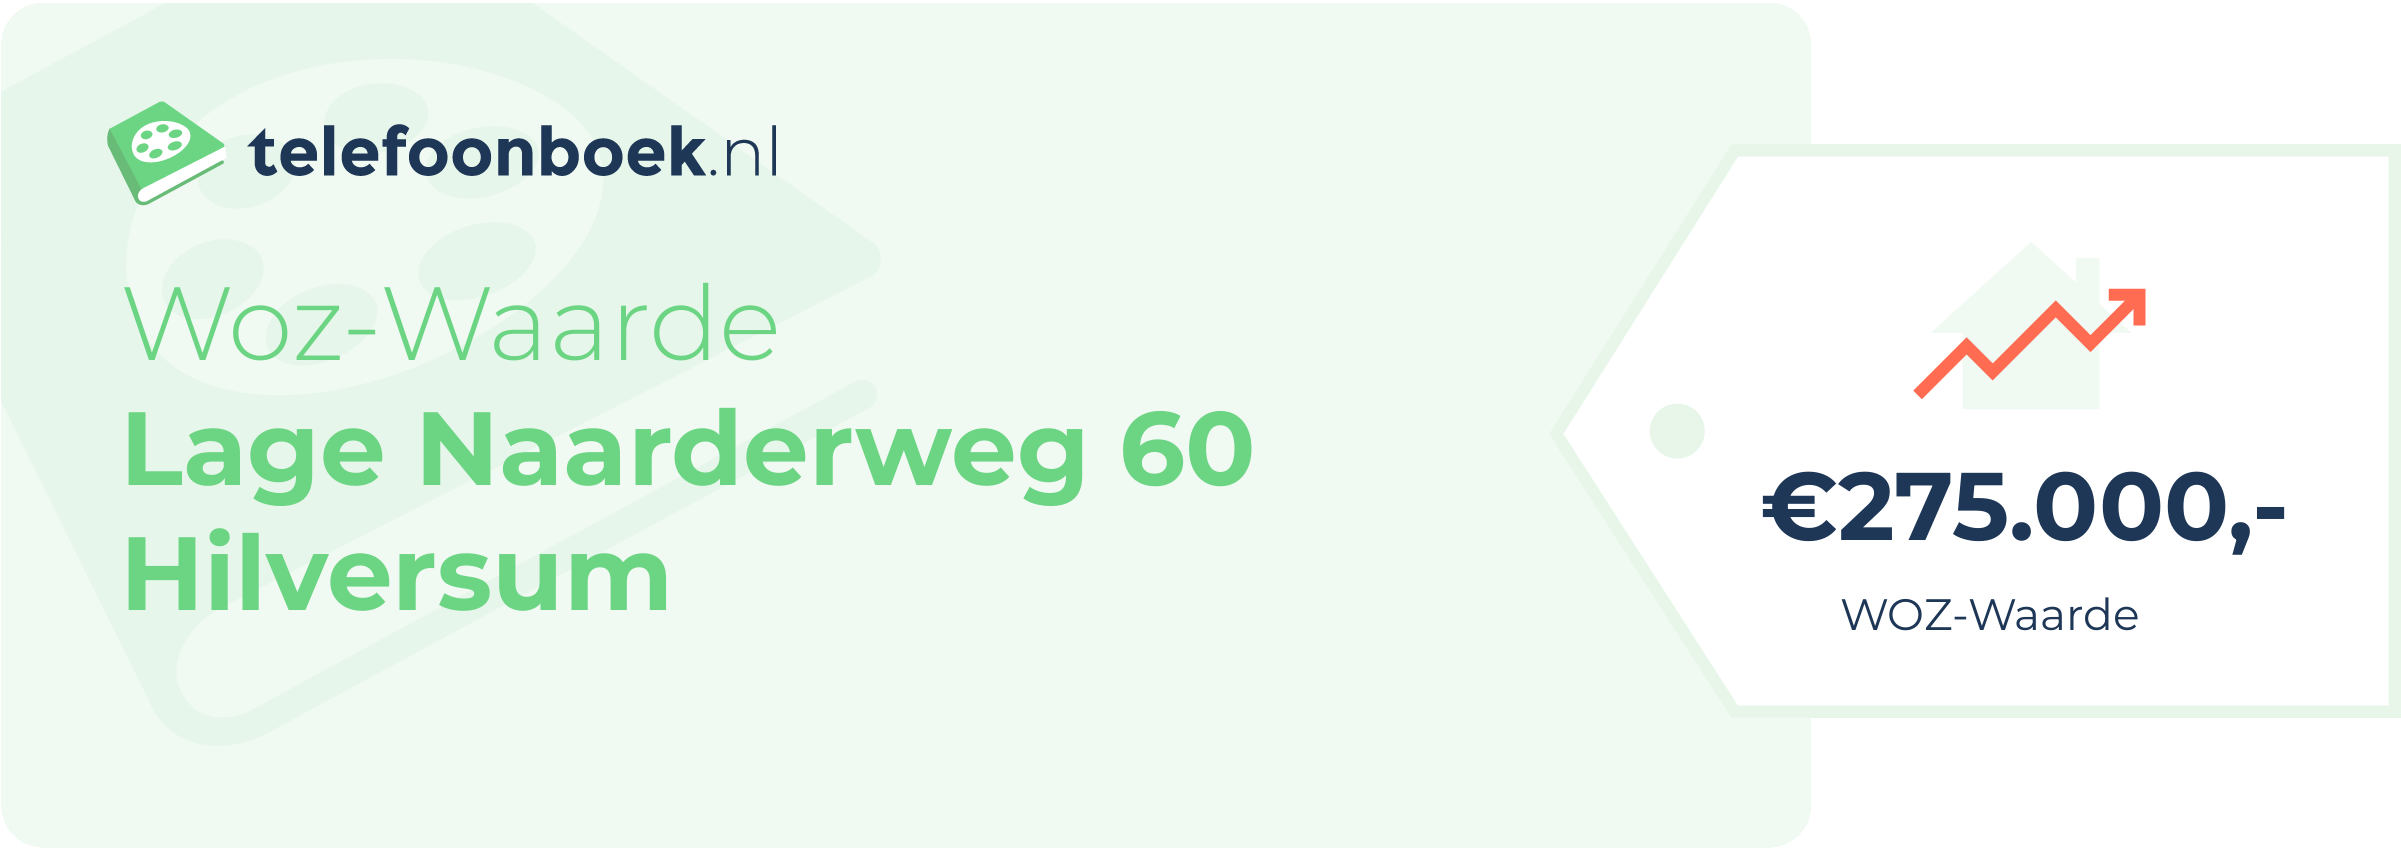 WOZ-waarde Lage Naarderweg 60 Hilversum